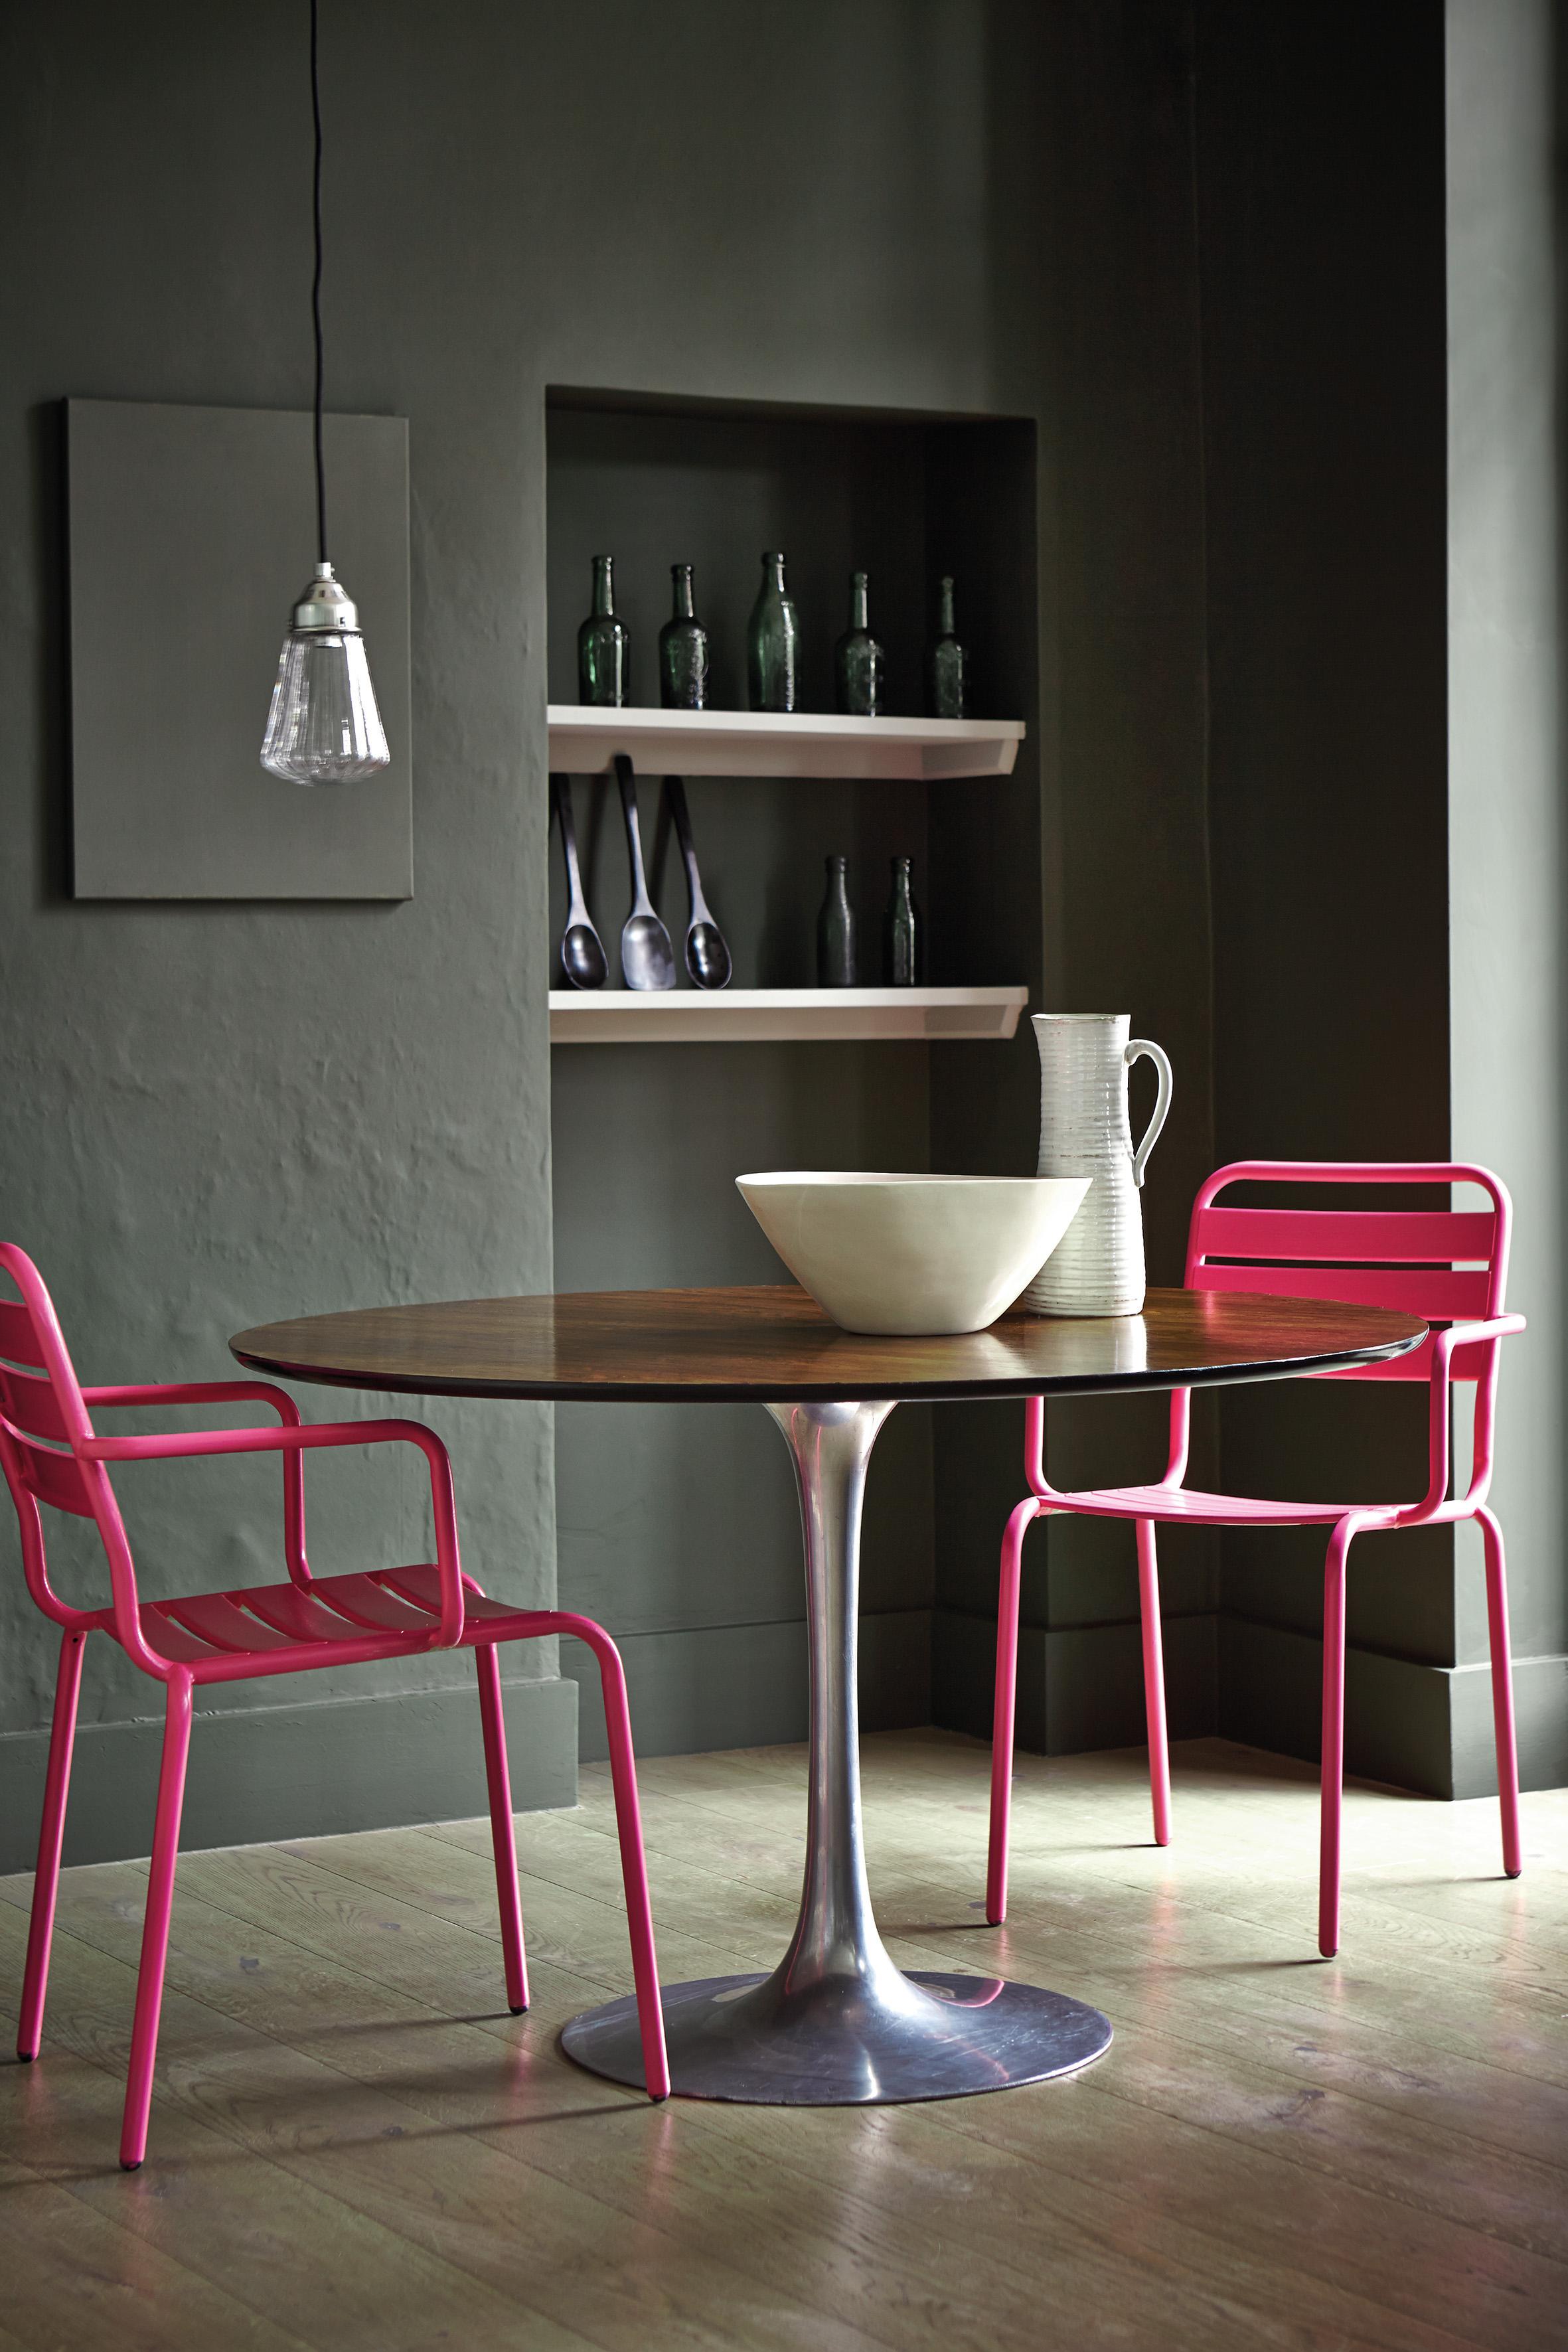 Pinkfarbene Stühle #esstisch #rundertisch #grauewandfarbe ©Little Greene